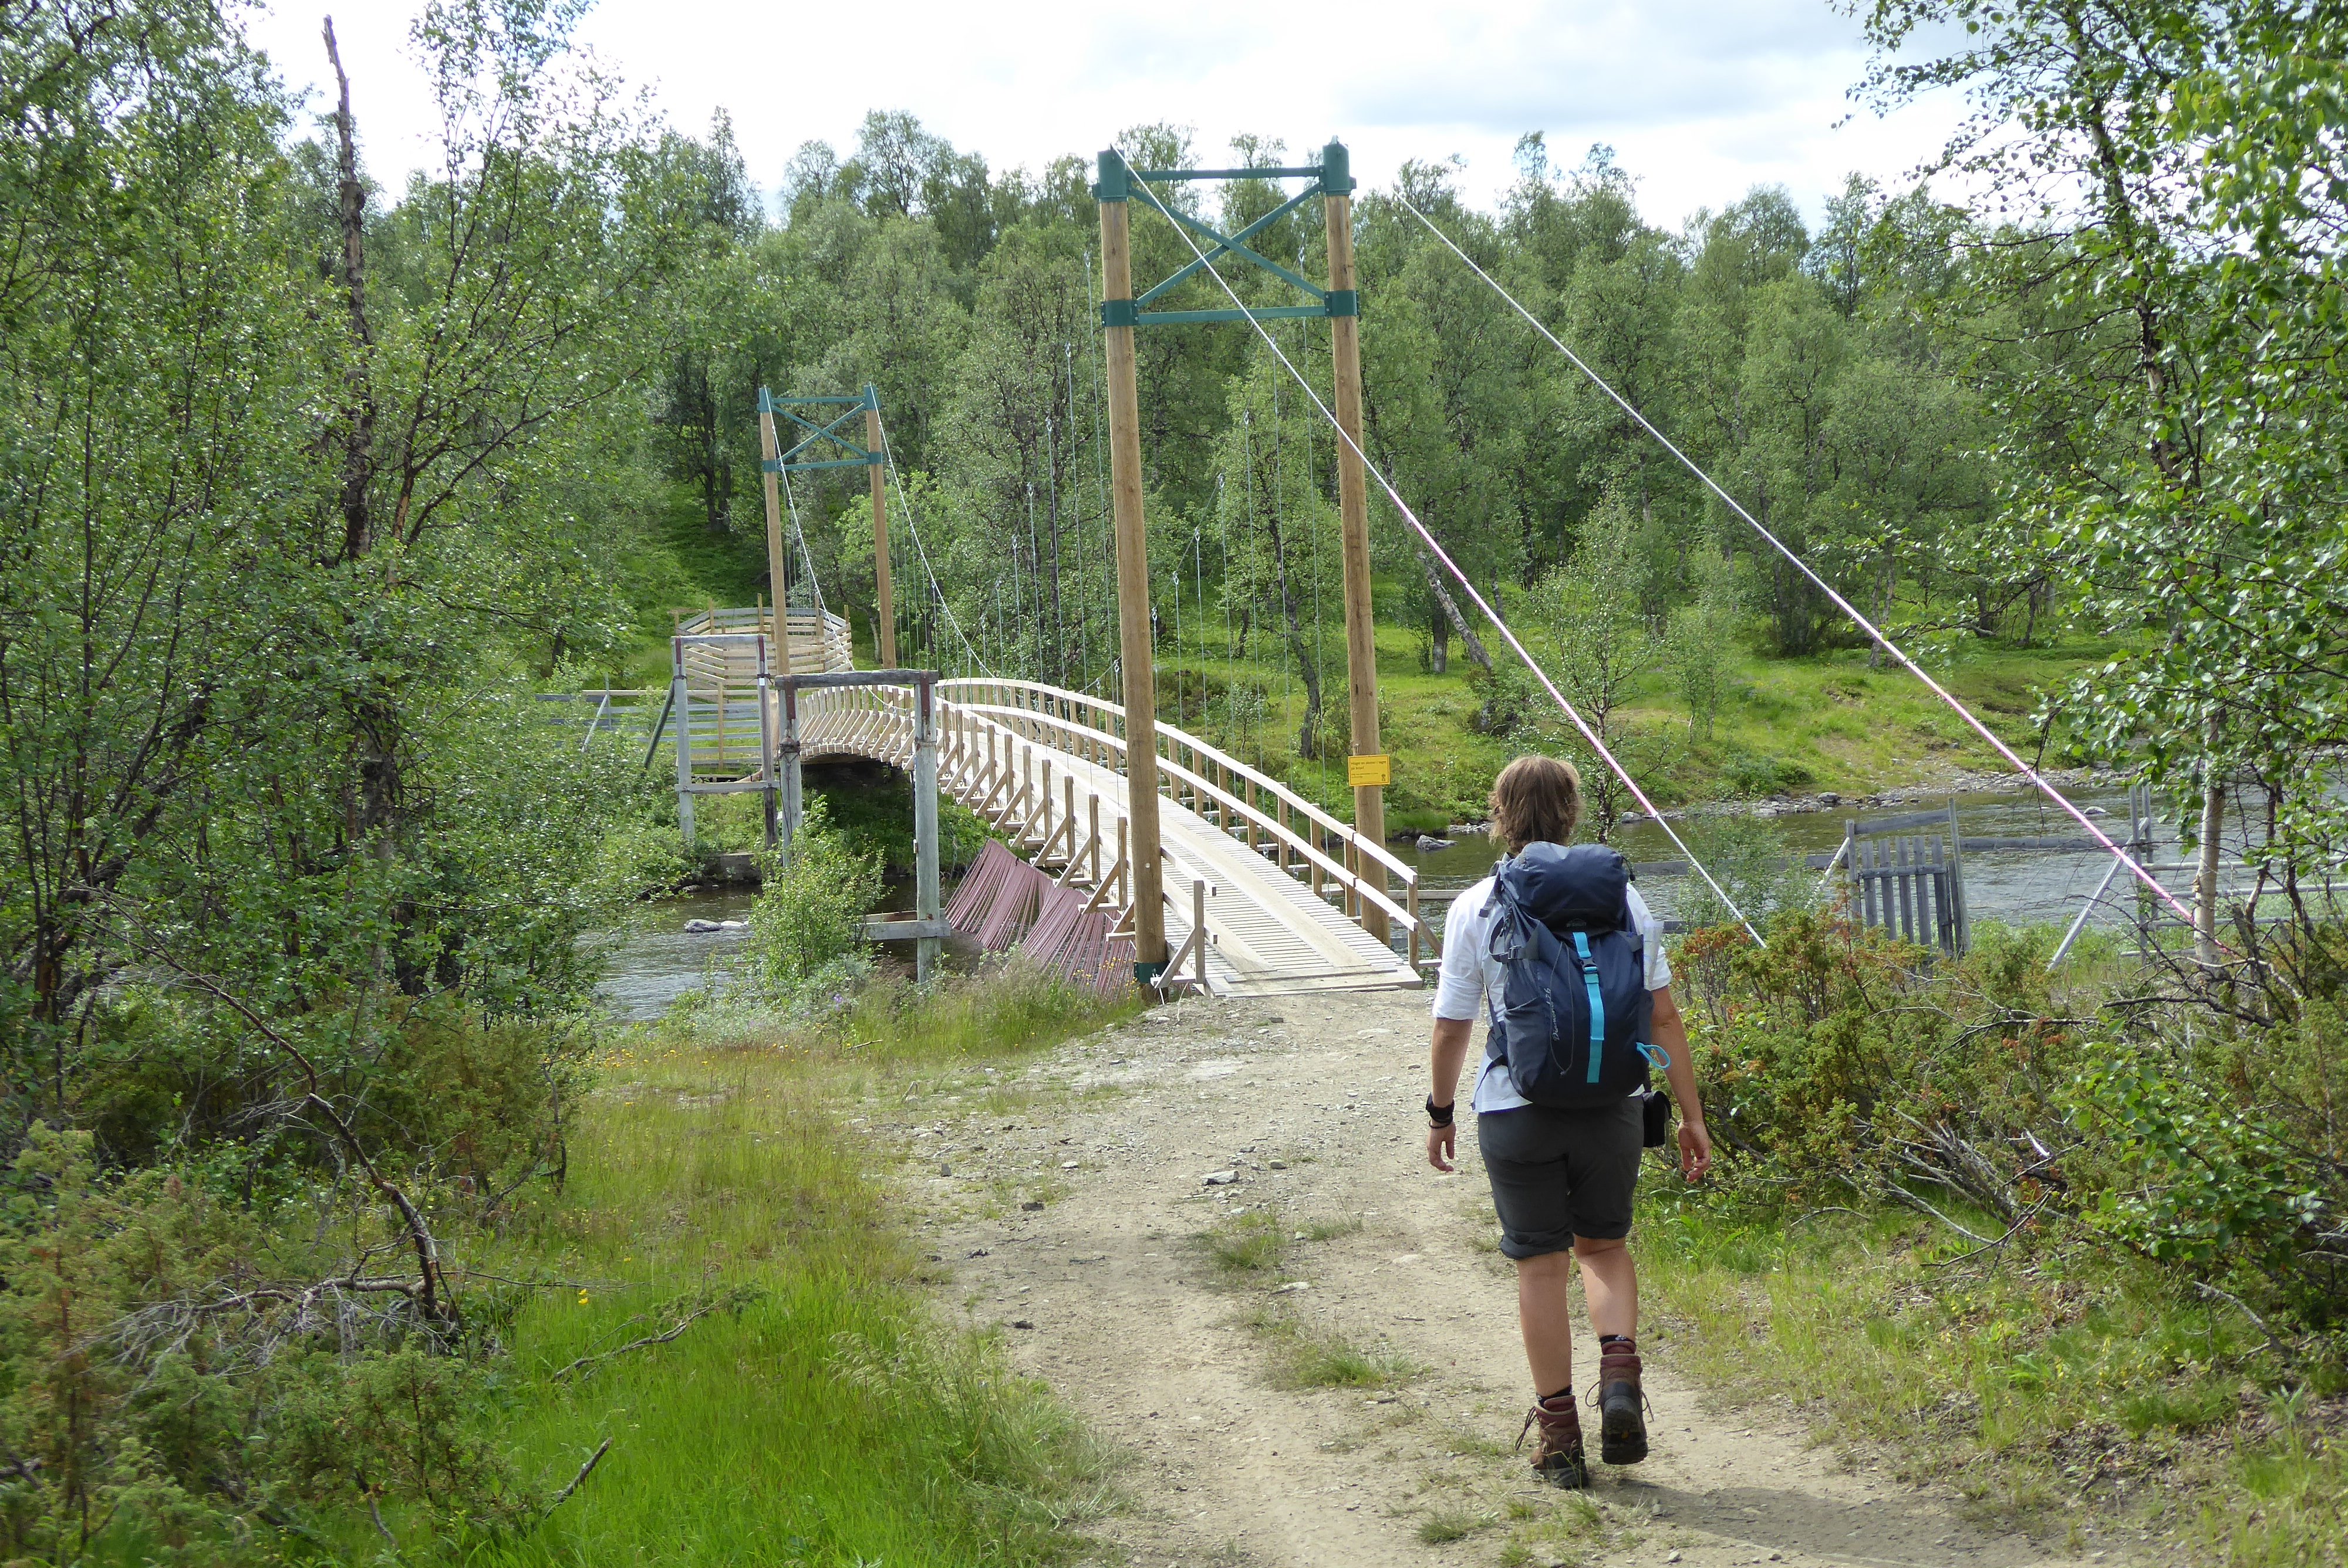 The suspension bridge at Daevnie.